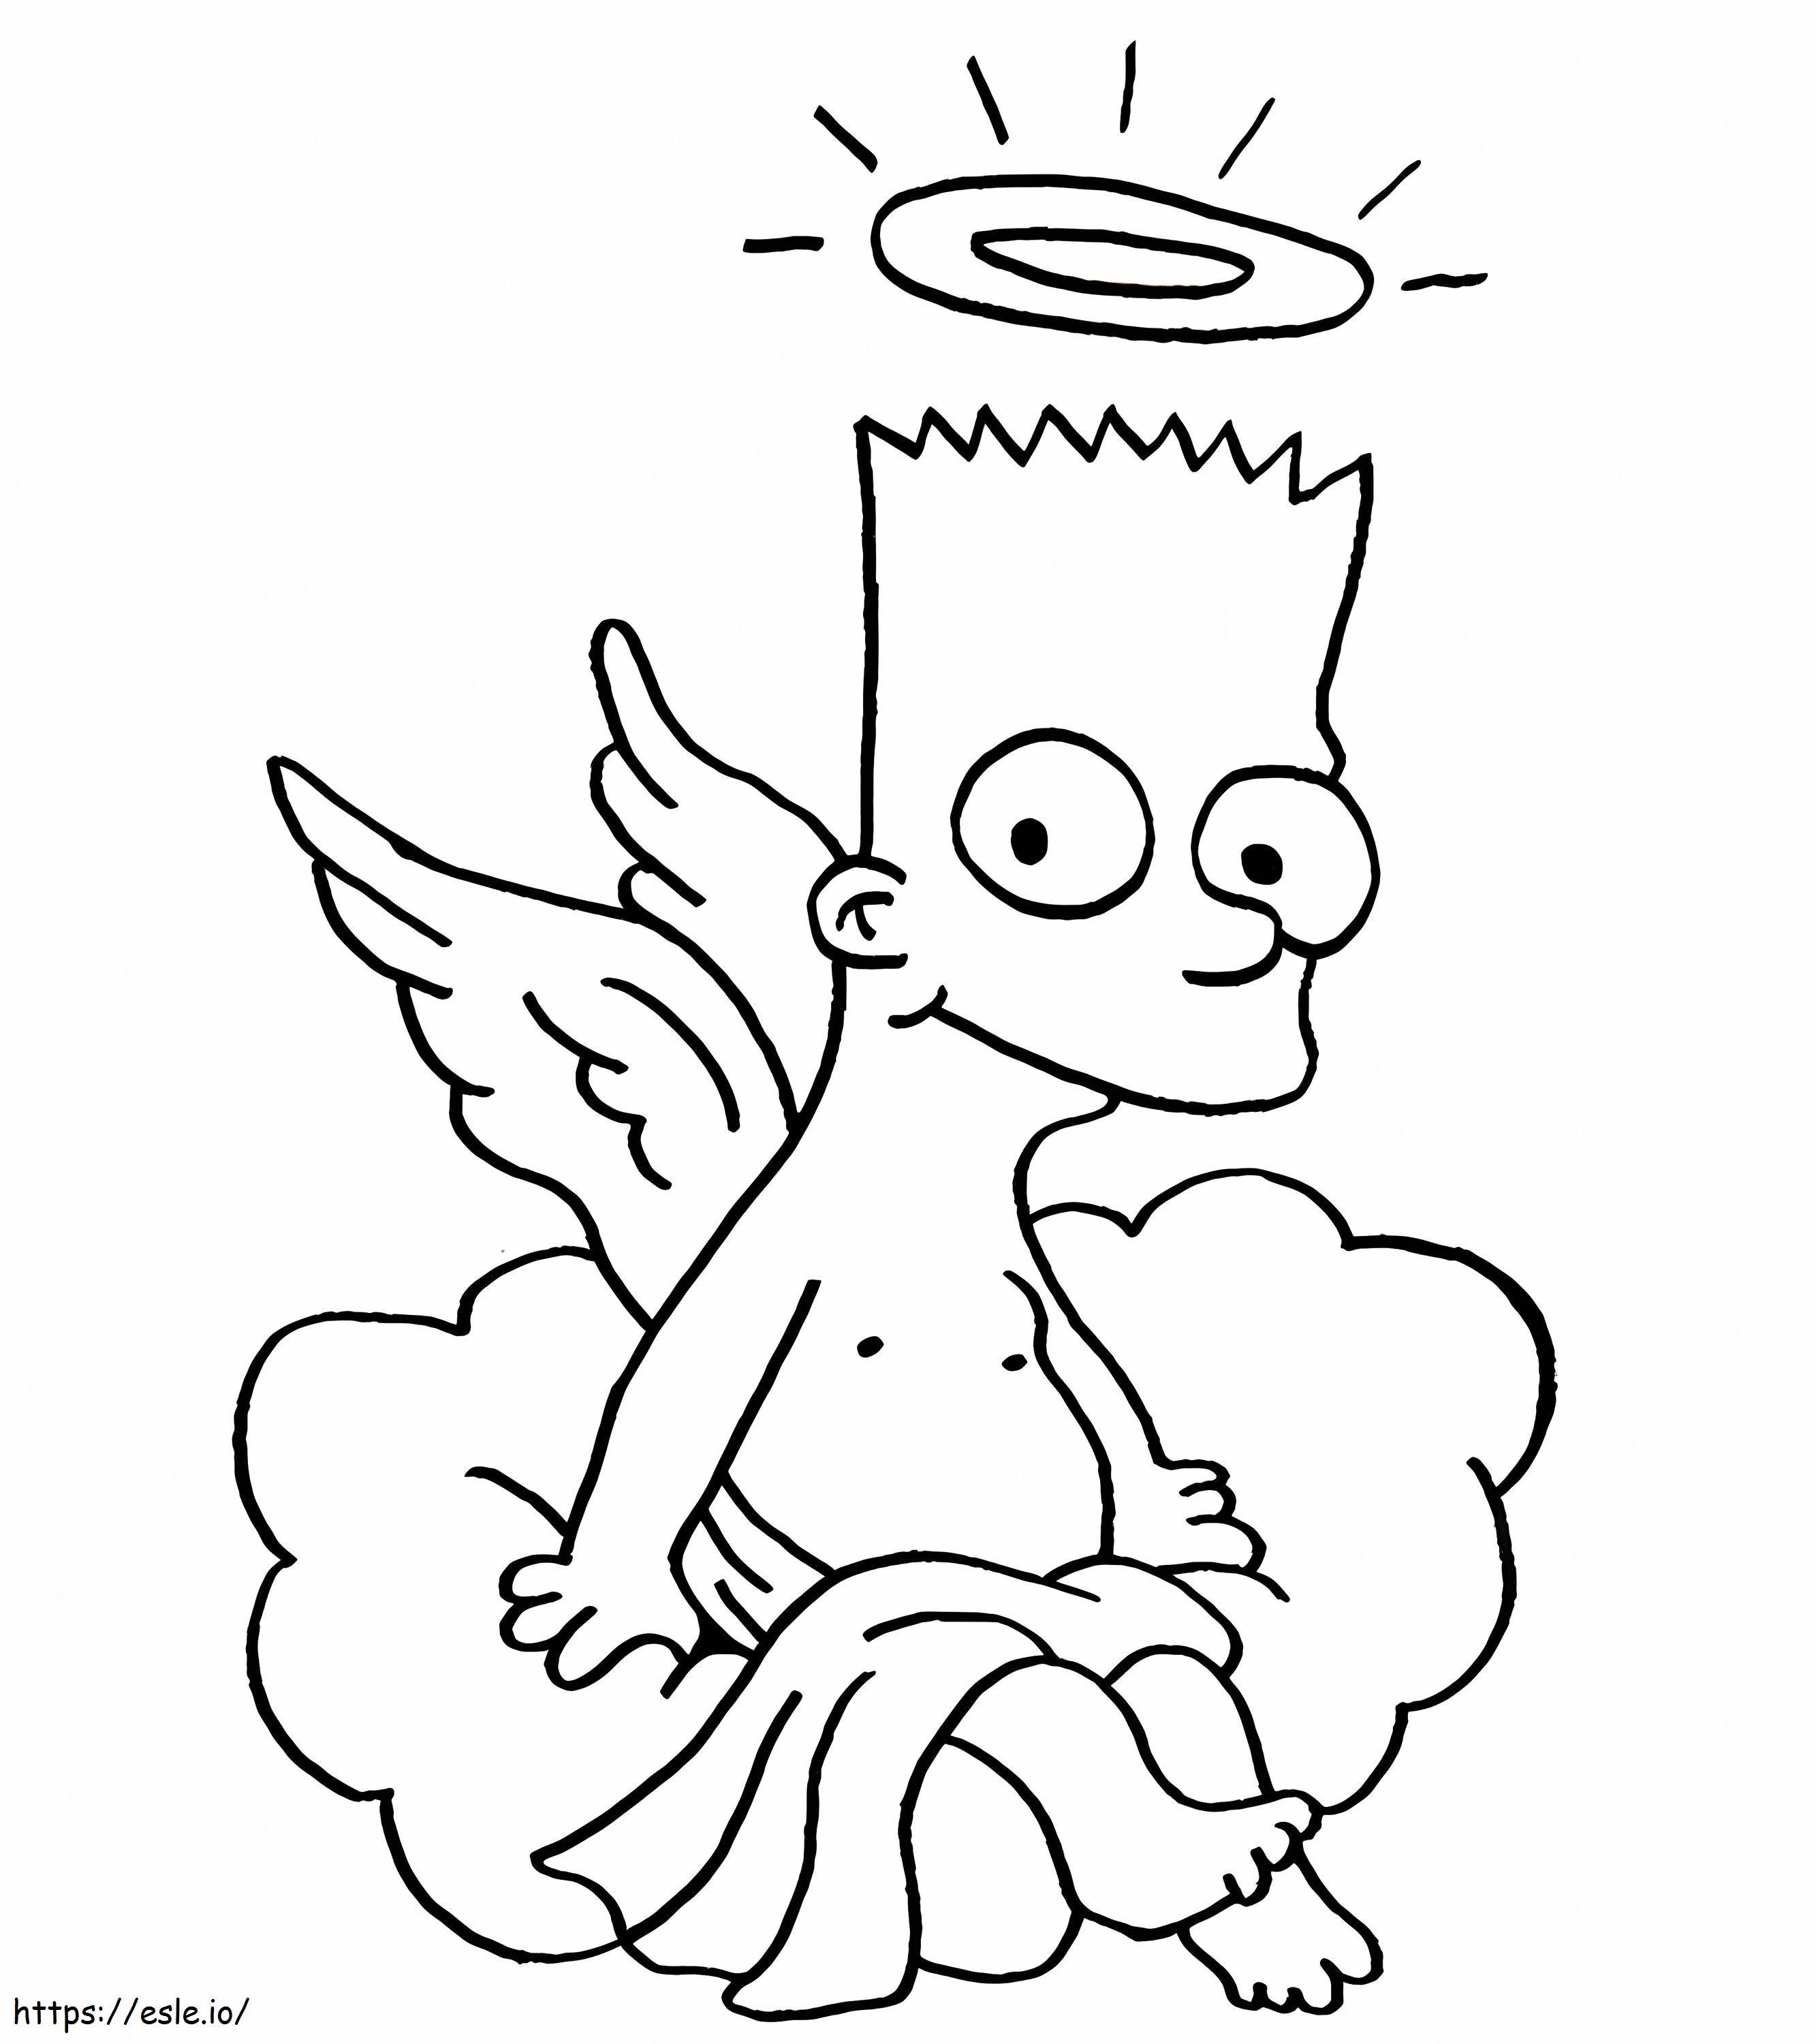 Simpatico Bart Simpson da colorare